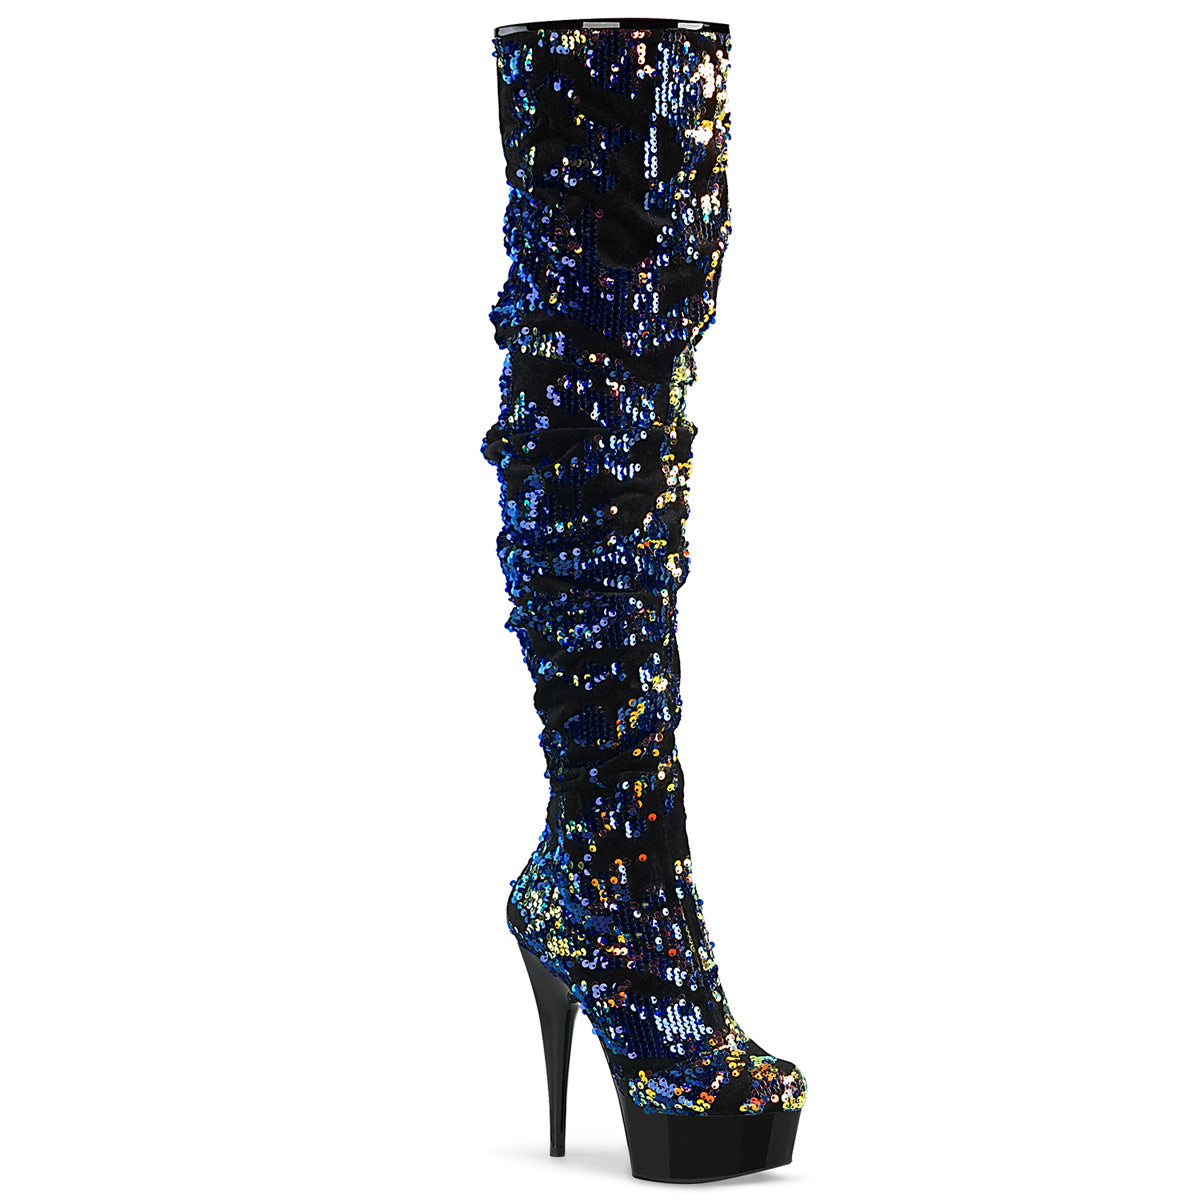 Delight-3004 6 "Heel blauwe iriserende pailletten strippers schoenen